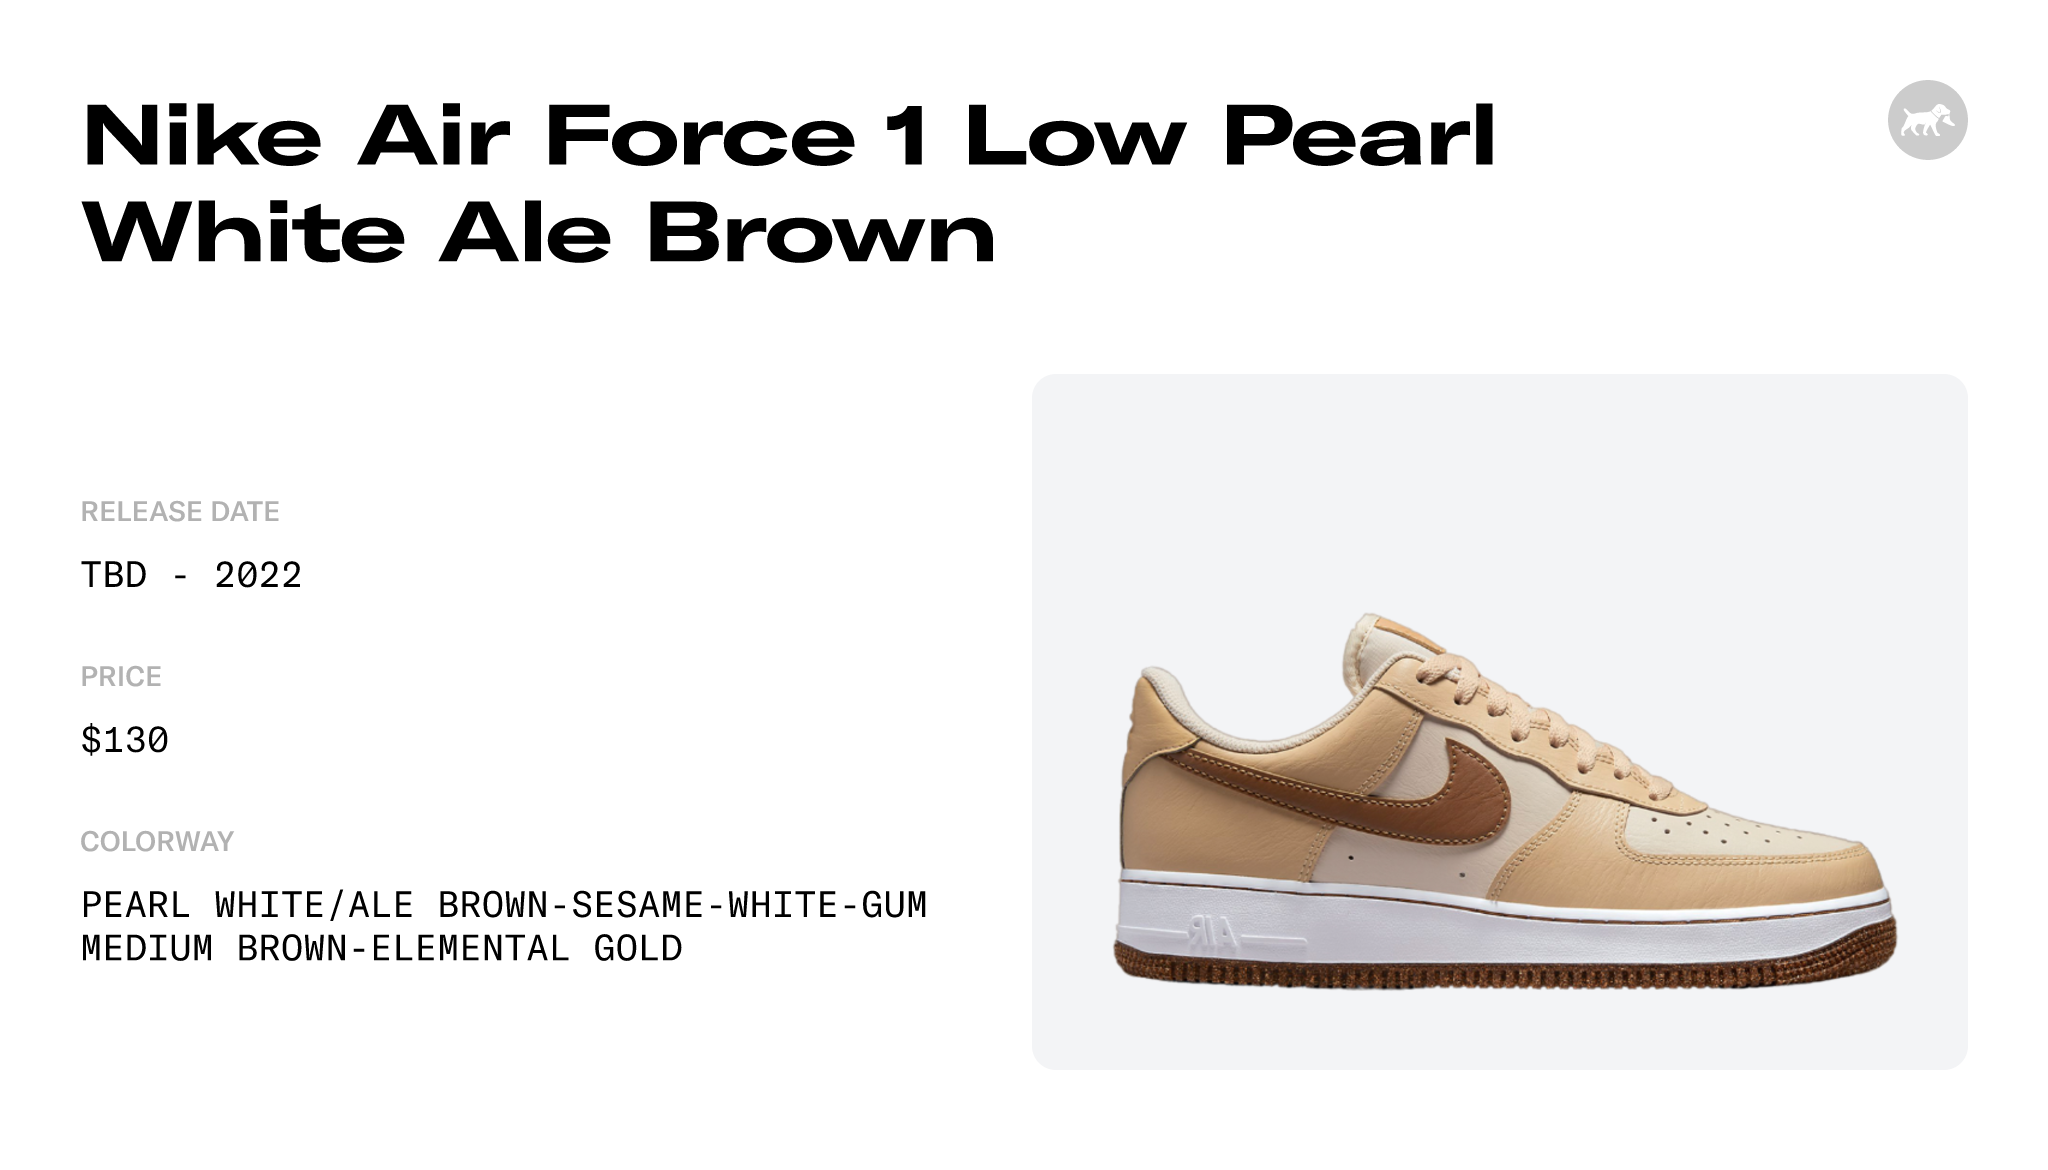 Nike Air Force 1 '07 LV8 Pearl White/Ale Brown-Sesame-White